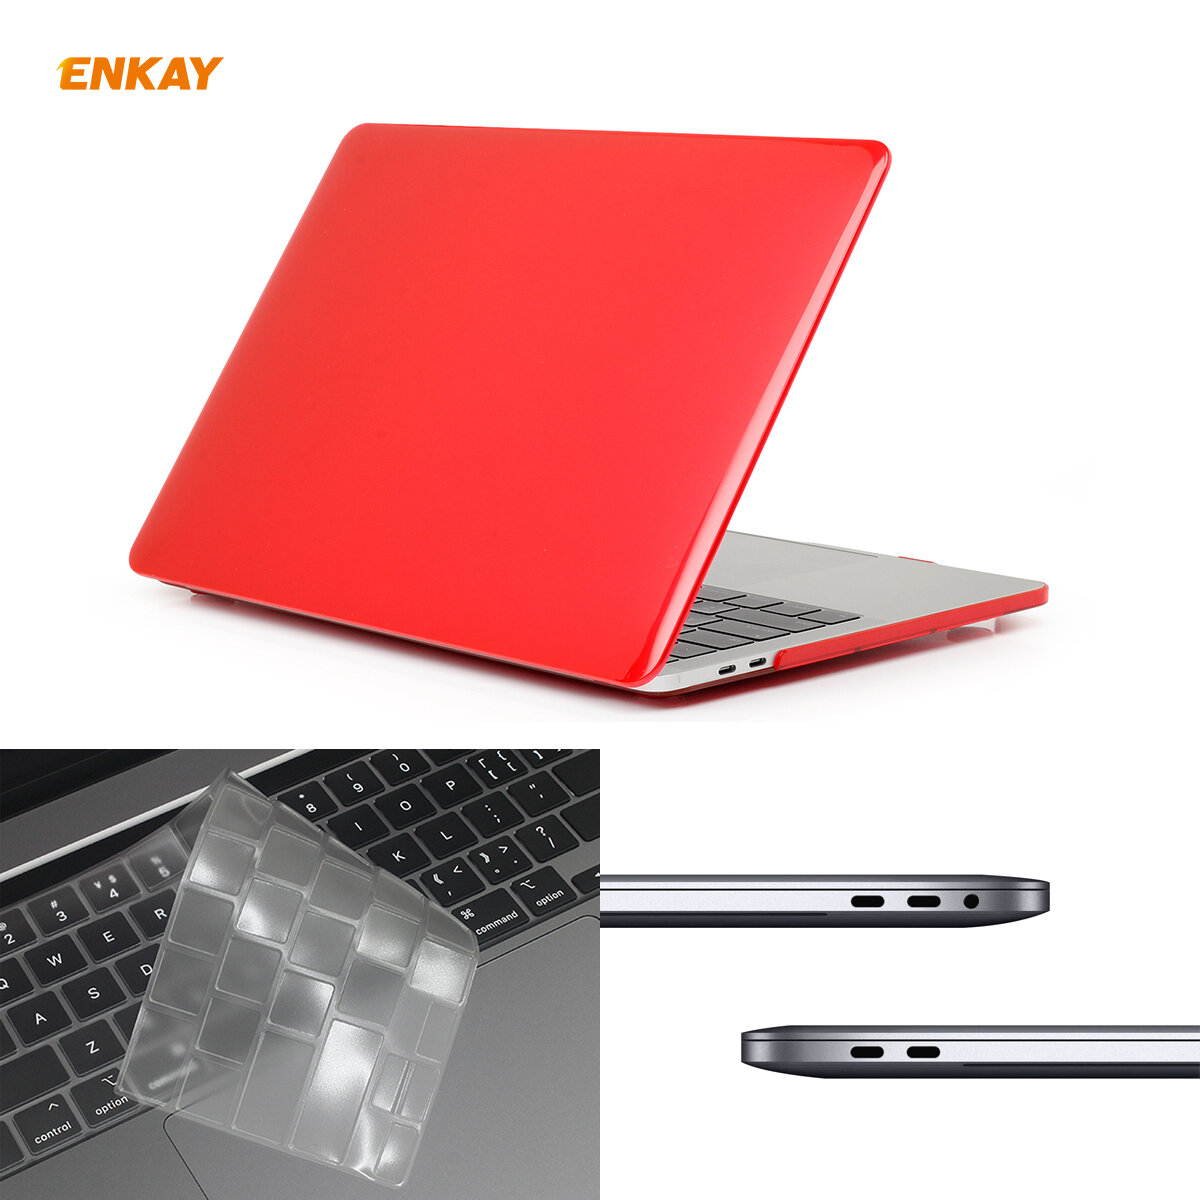 (EU version) Enkay Waterproof Dustproof TPU Macbook Keyboard Protective Film + Case Crystal Case + Dust Plug for MacBook Pro 16 2019 (A2141) COD